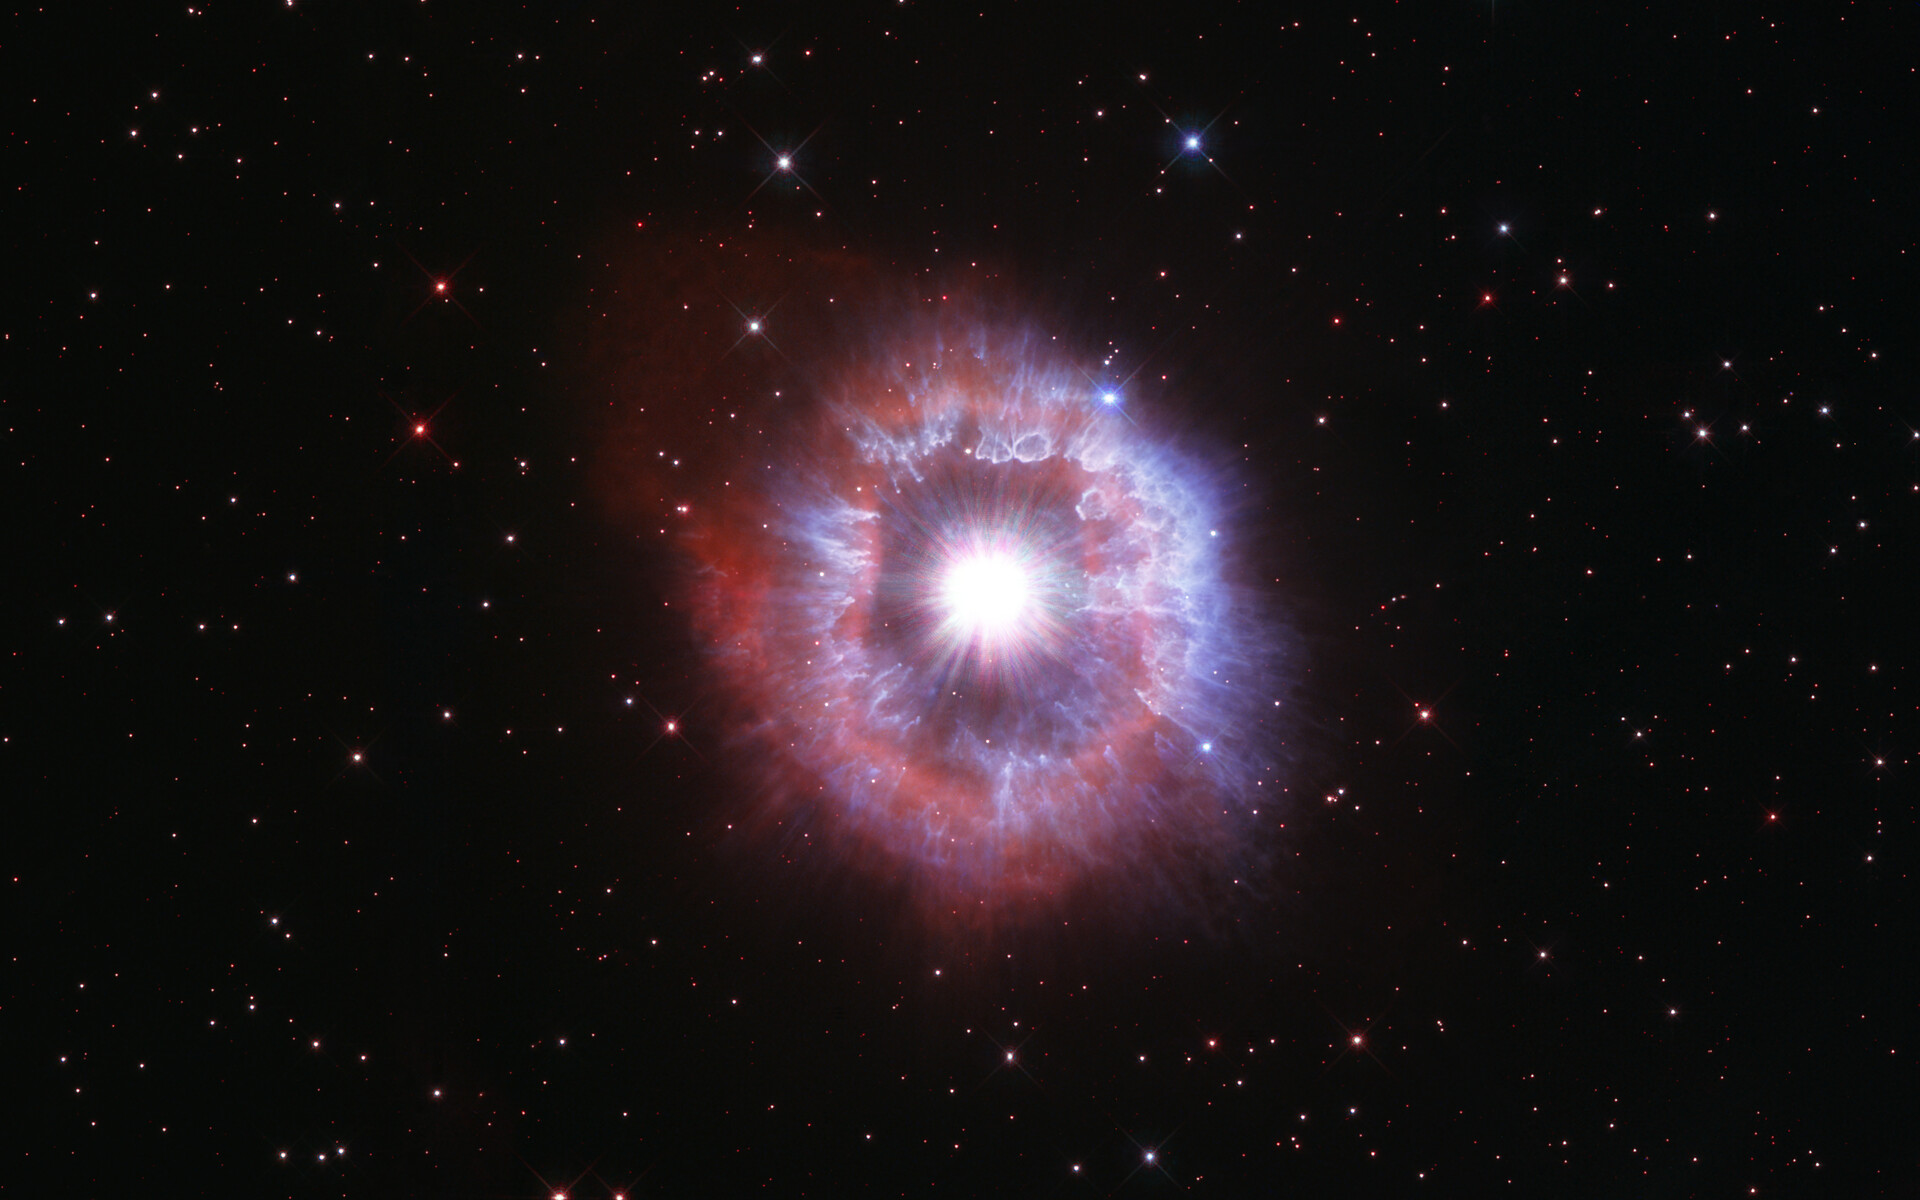 Pour célébrer le 31e anniversaire du lancement du télescope spatial Hubble, les astronomes ont dirigé le célèbre observatoire vers l'une des étoiles les plus brillantes de notre Galaxie pour capturer sa beauté. L'étoile géante présentée dans cette dernière image d'anniversaire du télescope spatial Hubble mène un bras de fer entre la gravité et le rayonnement pour éviter l'autodestruction. L'étoile, appelée AG Carinae, est entourée d'une coquille en expansion de gaz et de poussières. La nébuleuse mesure environ cinq années-lumière de large, ce qui équivaut à la distance d'ici à notre étoile la plus proche, Proxima du Centaure. © Nasa, ESA and STScI